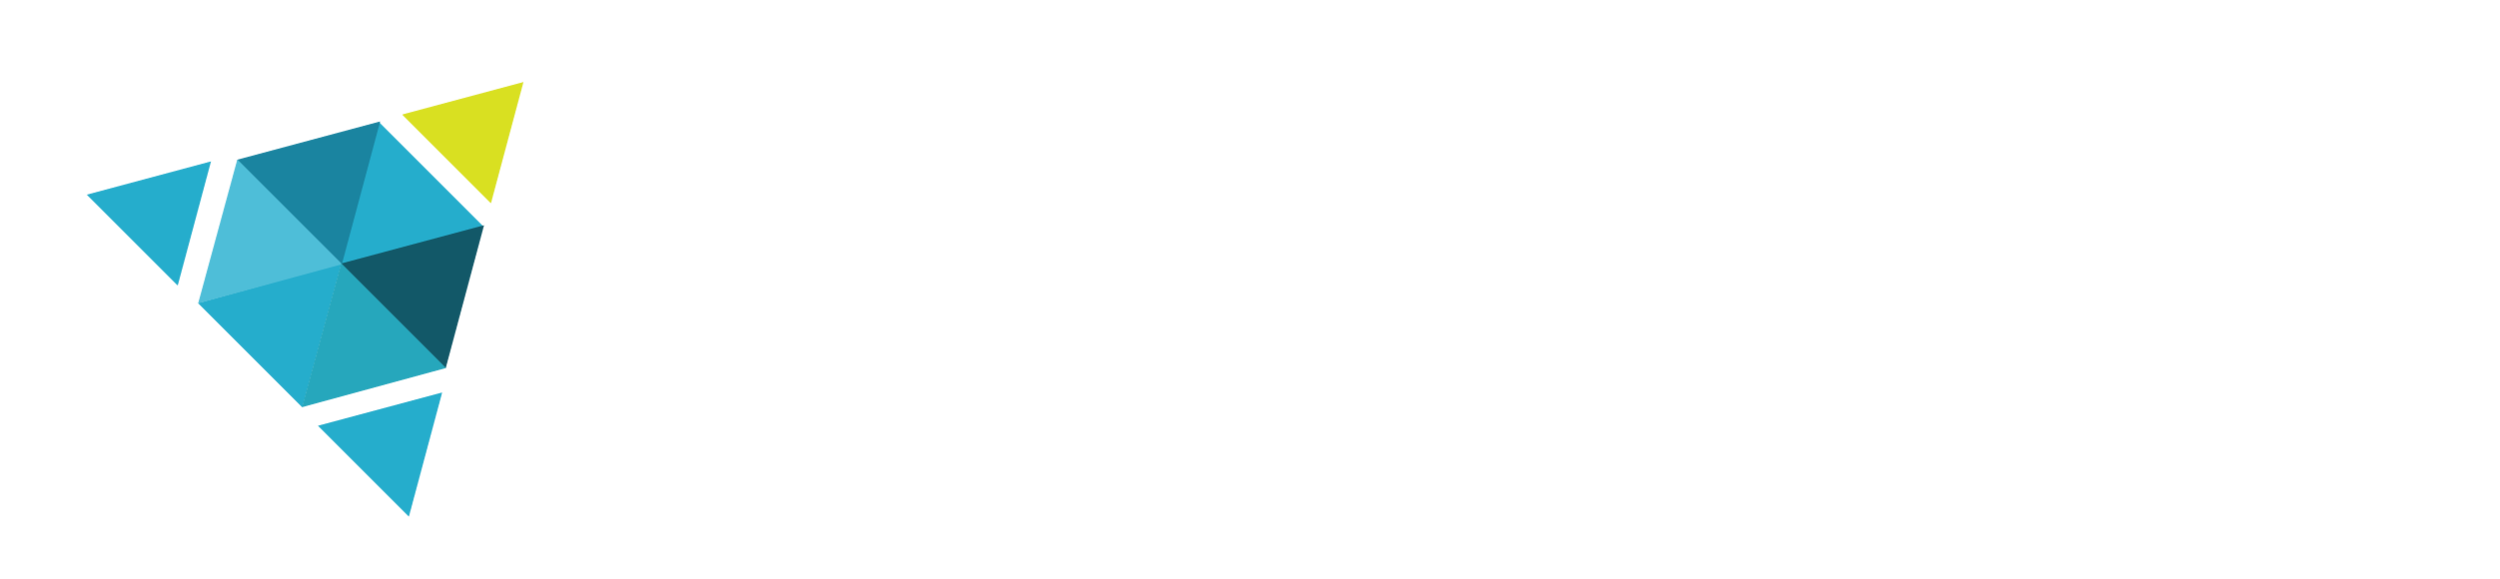 amitech-logo-final-white-02.png